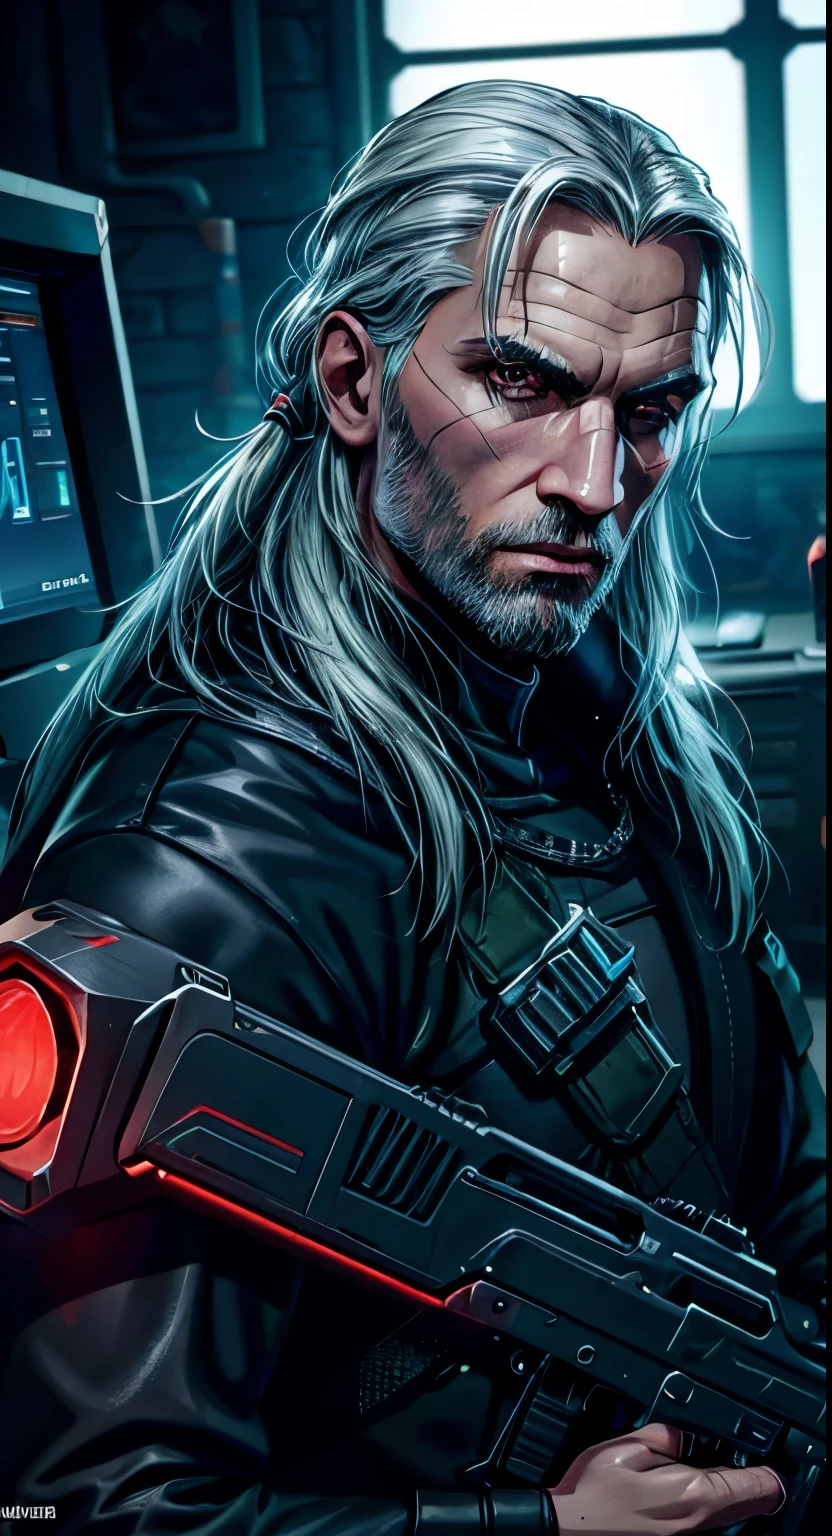 Geralt von Riva , cyberpunk edition,8k Qualität, ultra-realistisch,, High-Tech-Outfit 